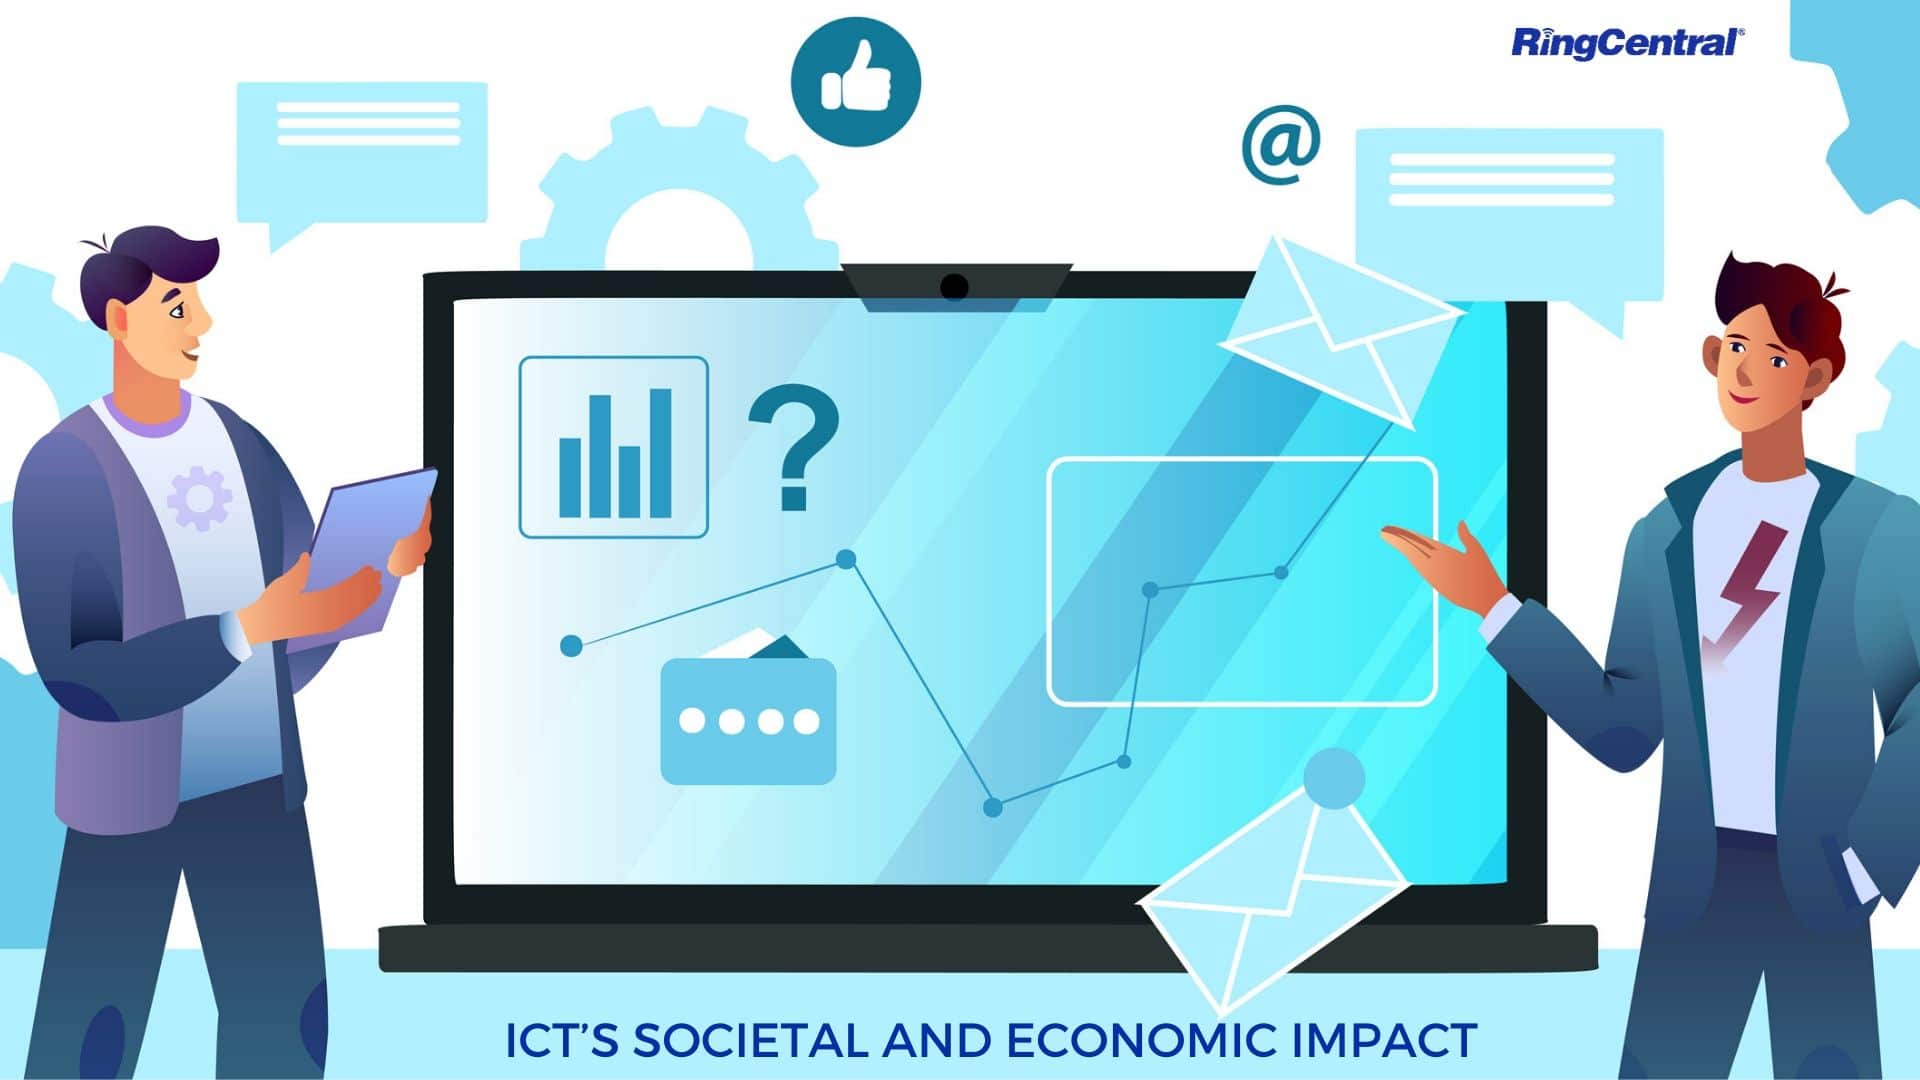 ICT’s societal and economic impact